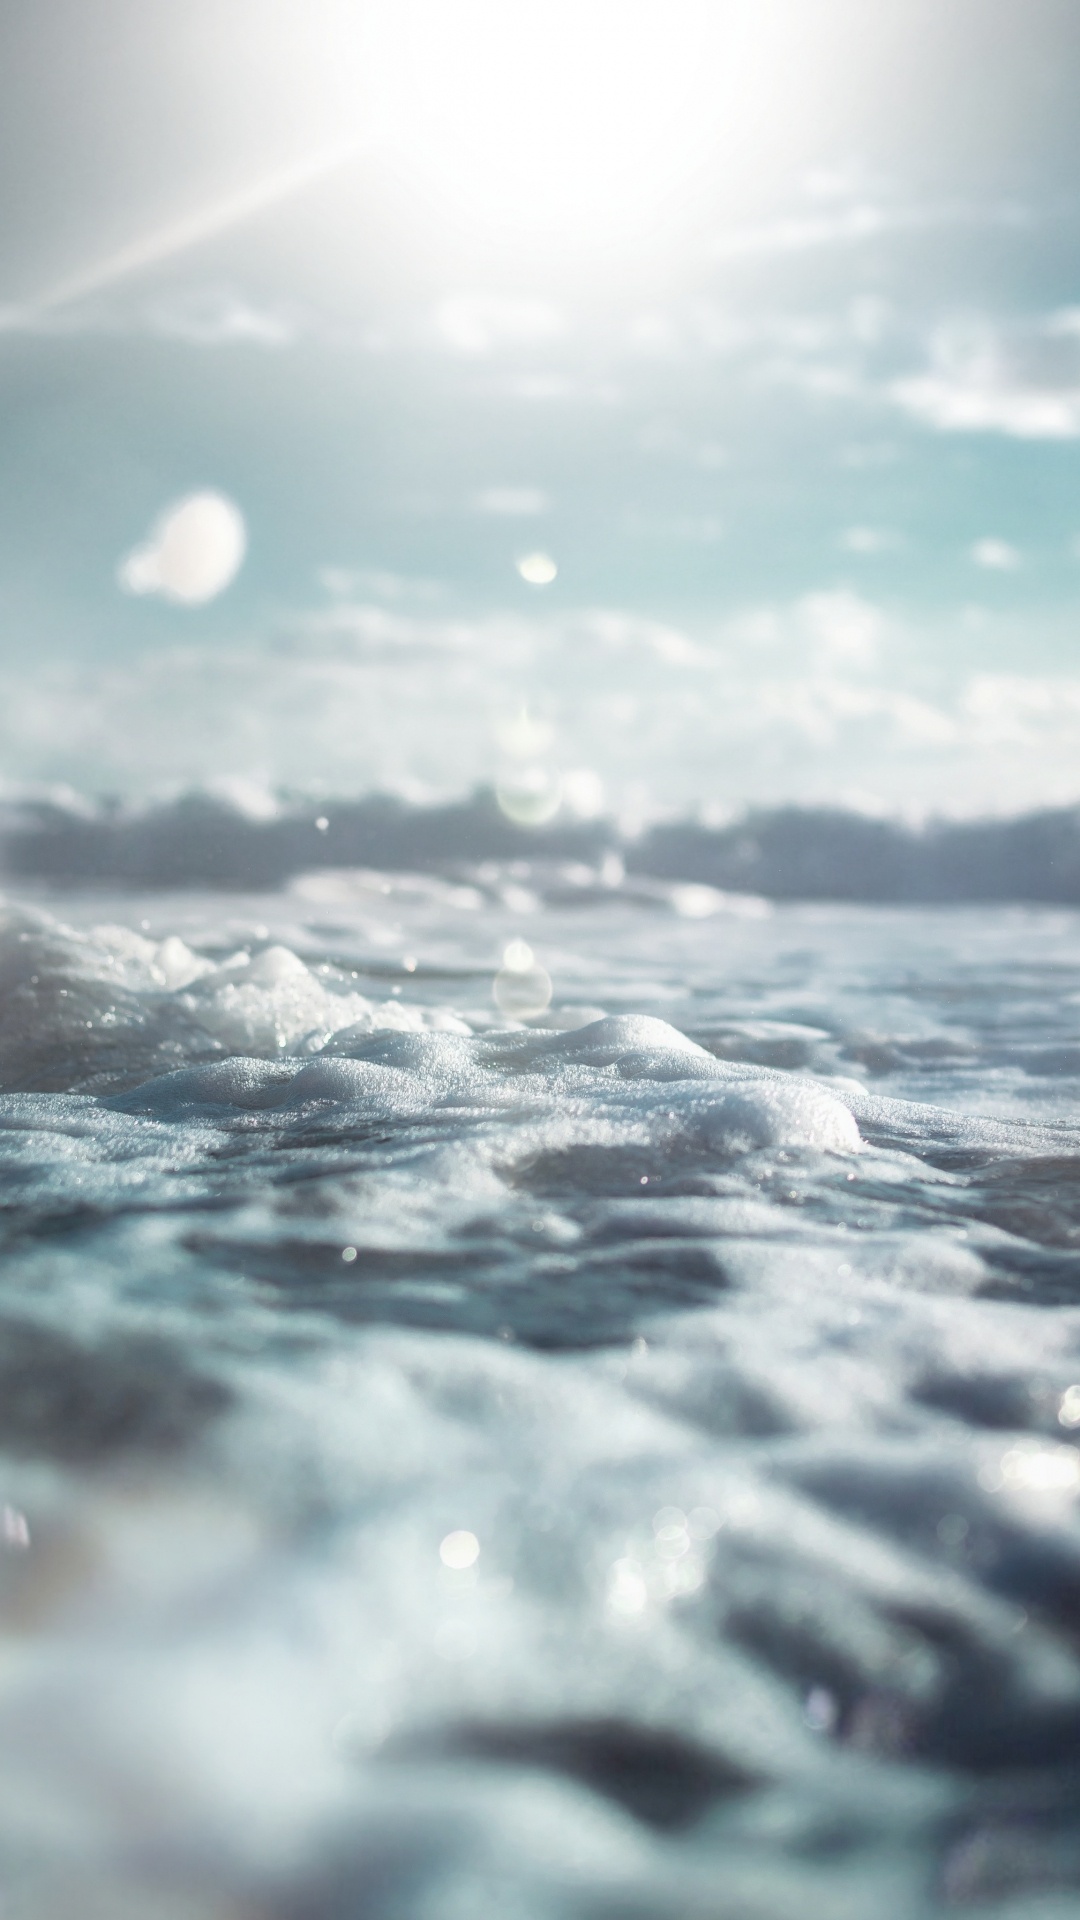 Agua, Mar, Oceano, el Viento de la Onda, Ambiente. Wallpaper in 1080x1920 Resolution